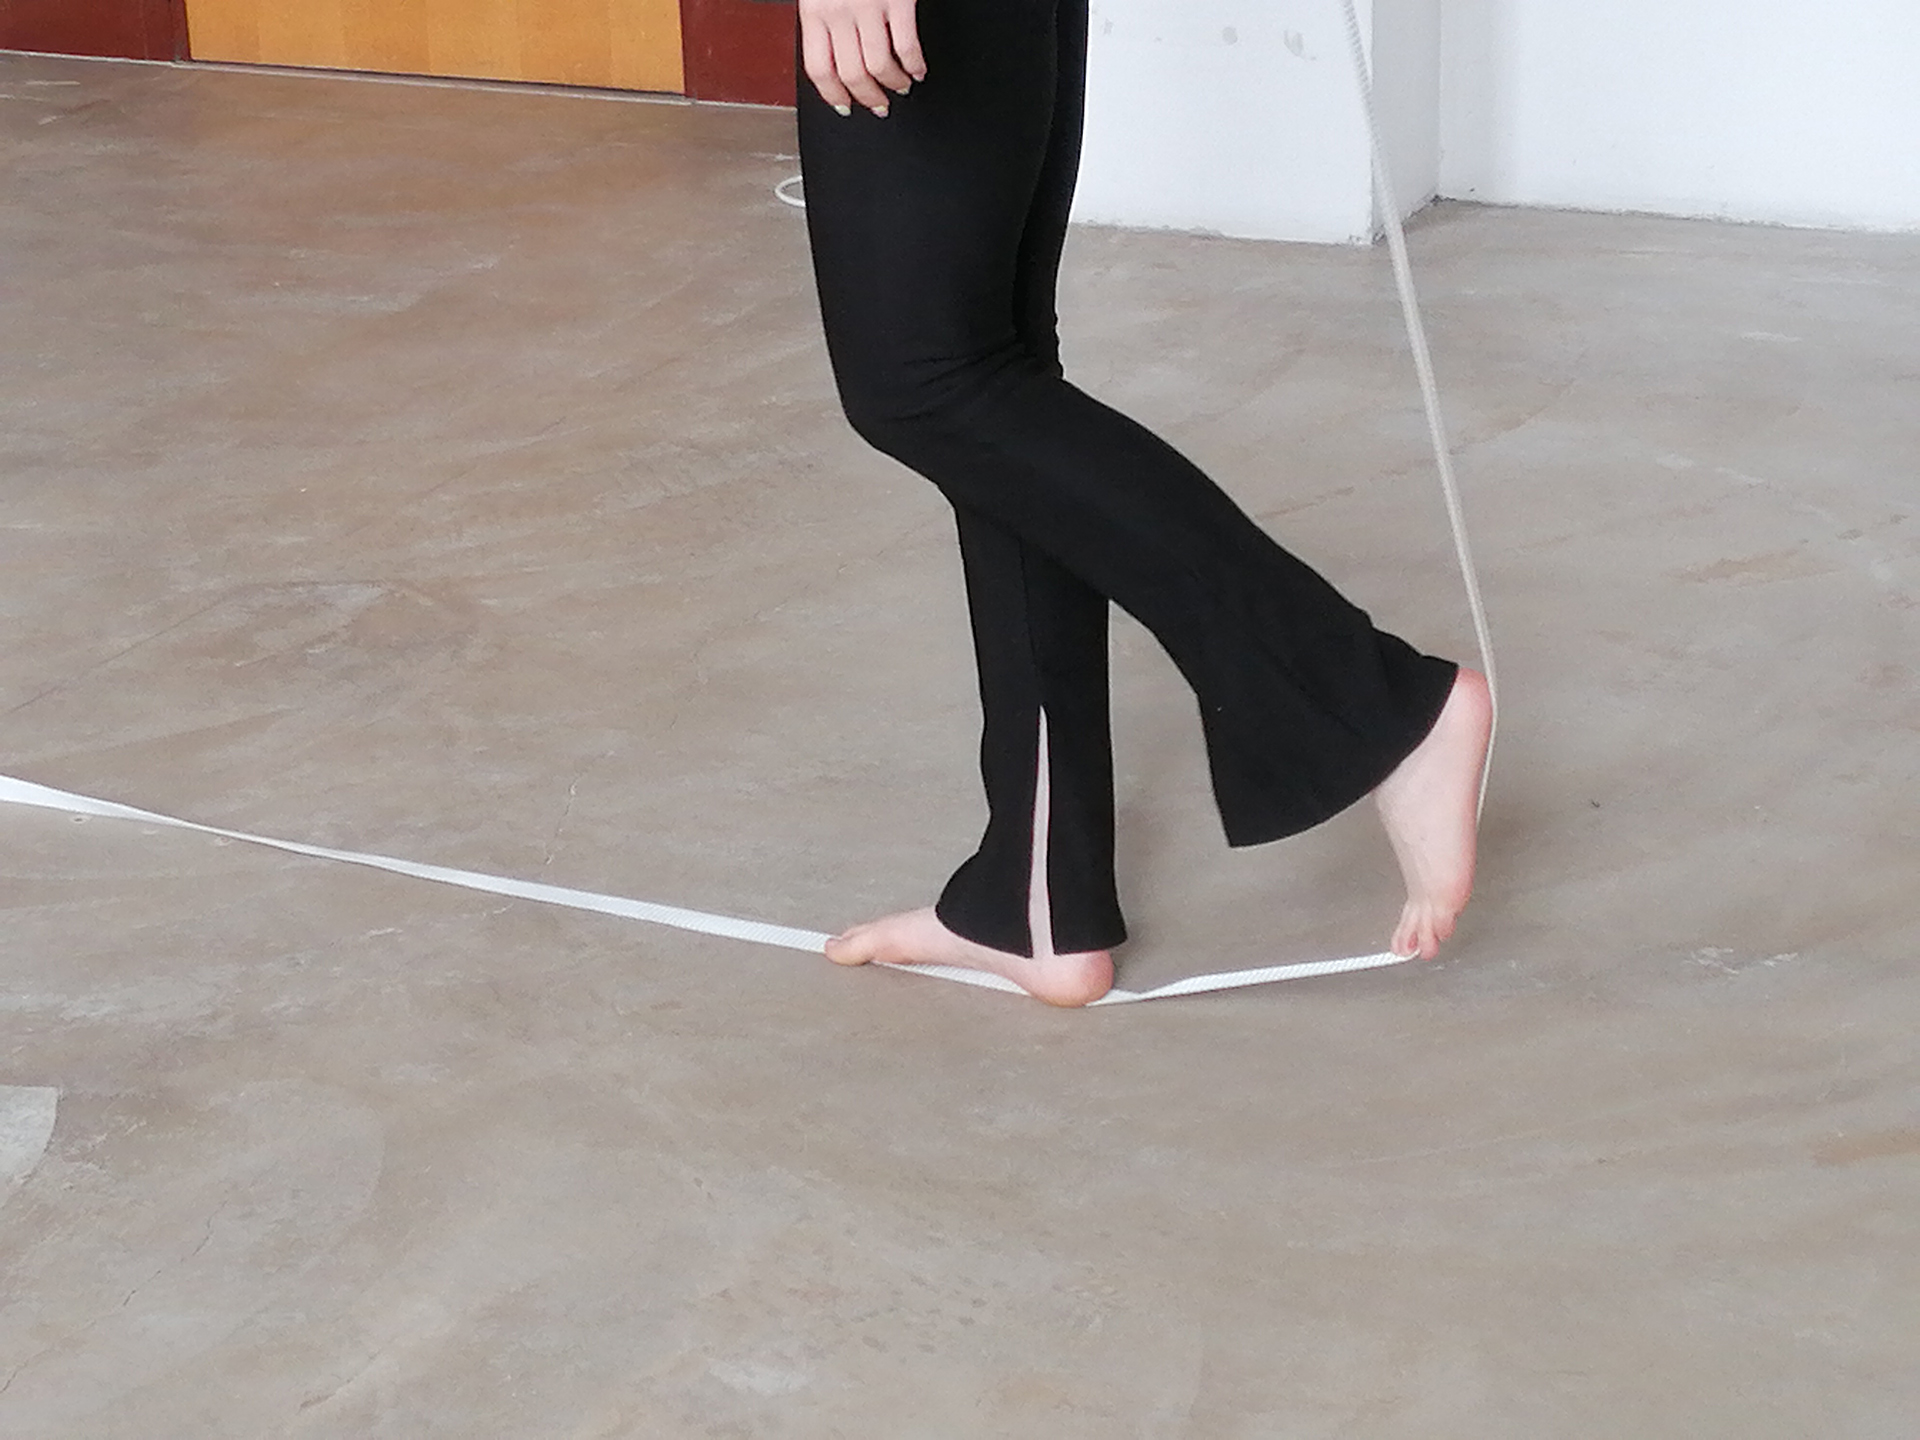 Kadr na którym widoczne są nagie stopy kształtujące przebieg białej taśmy w ten sposób że jedna przyciska ją do podłogi, druga ustawiona prostopadle napina ją do tyłu